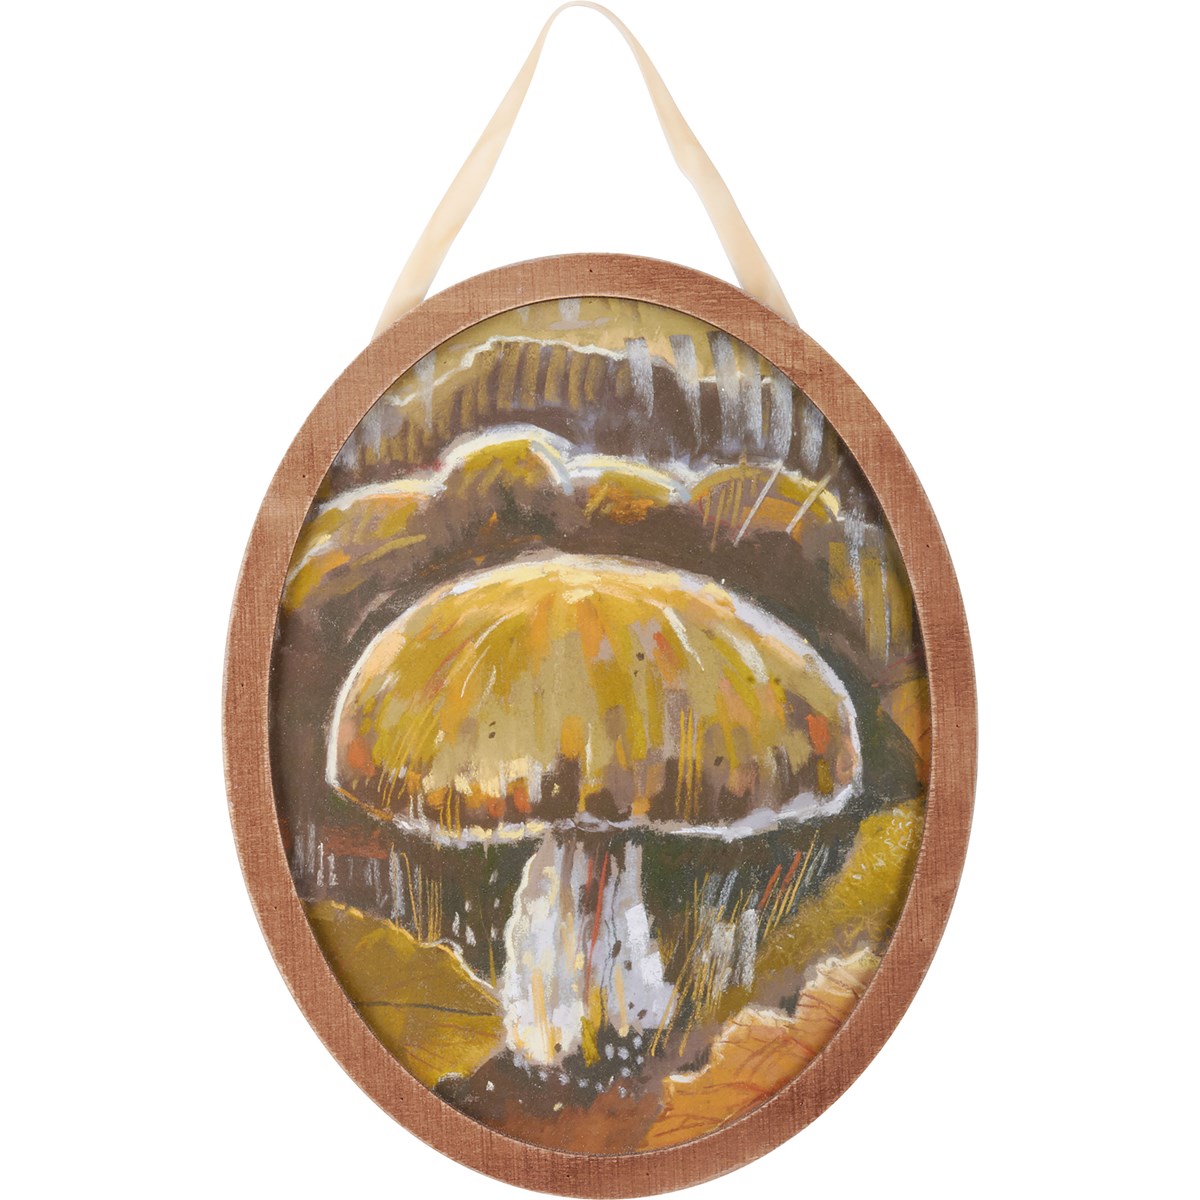 Mushroom Hanging Decor - Wood, Paper, Velvet